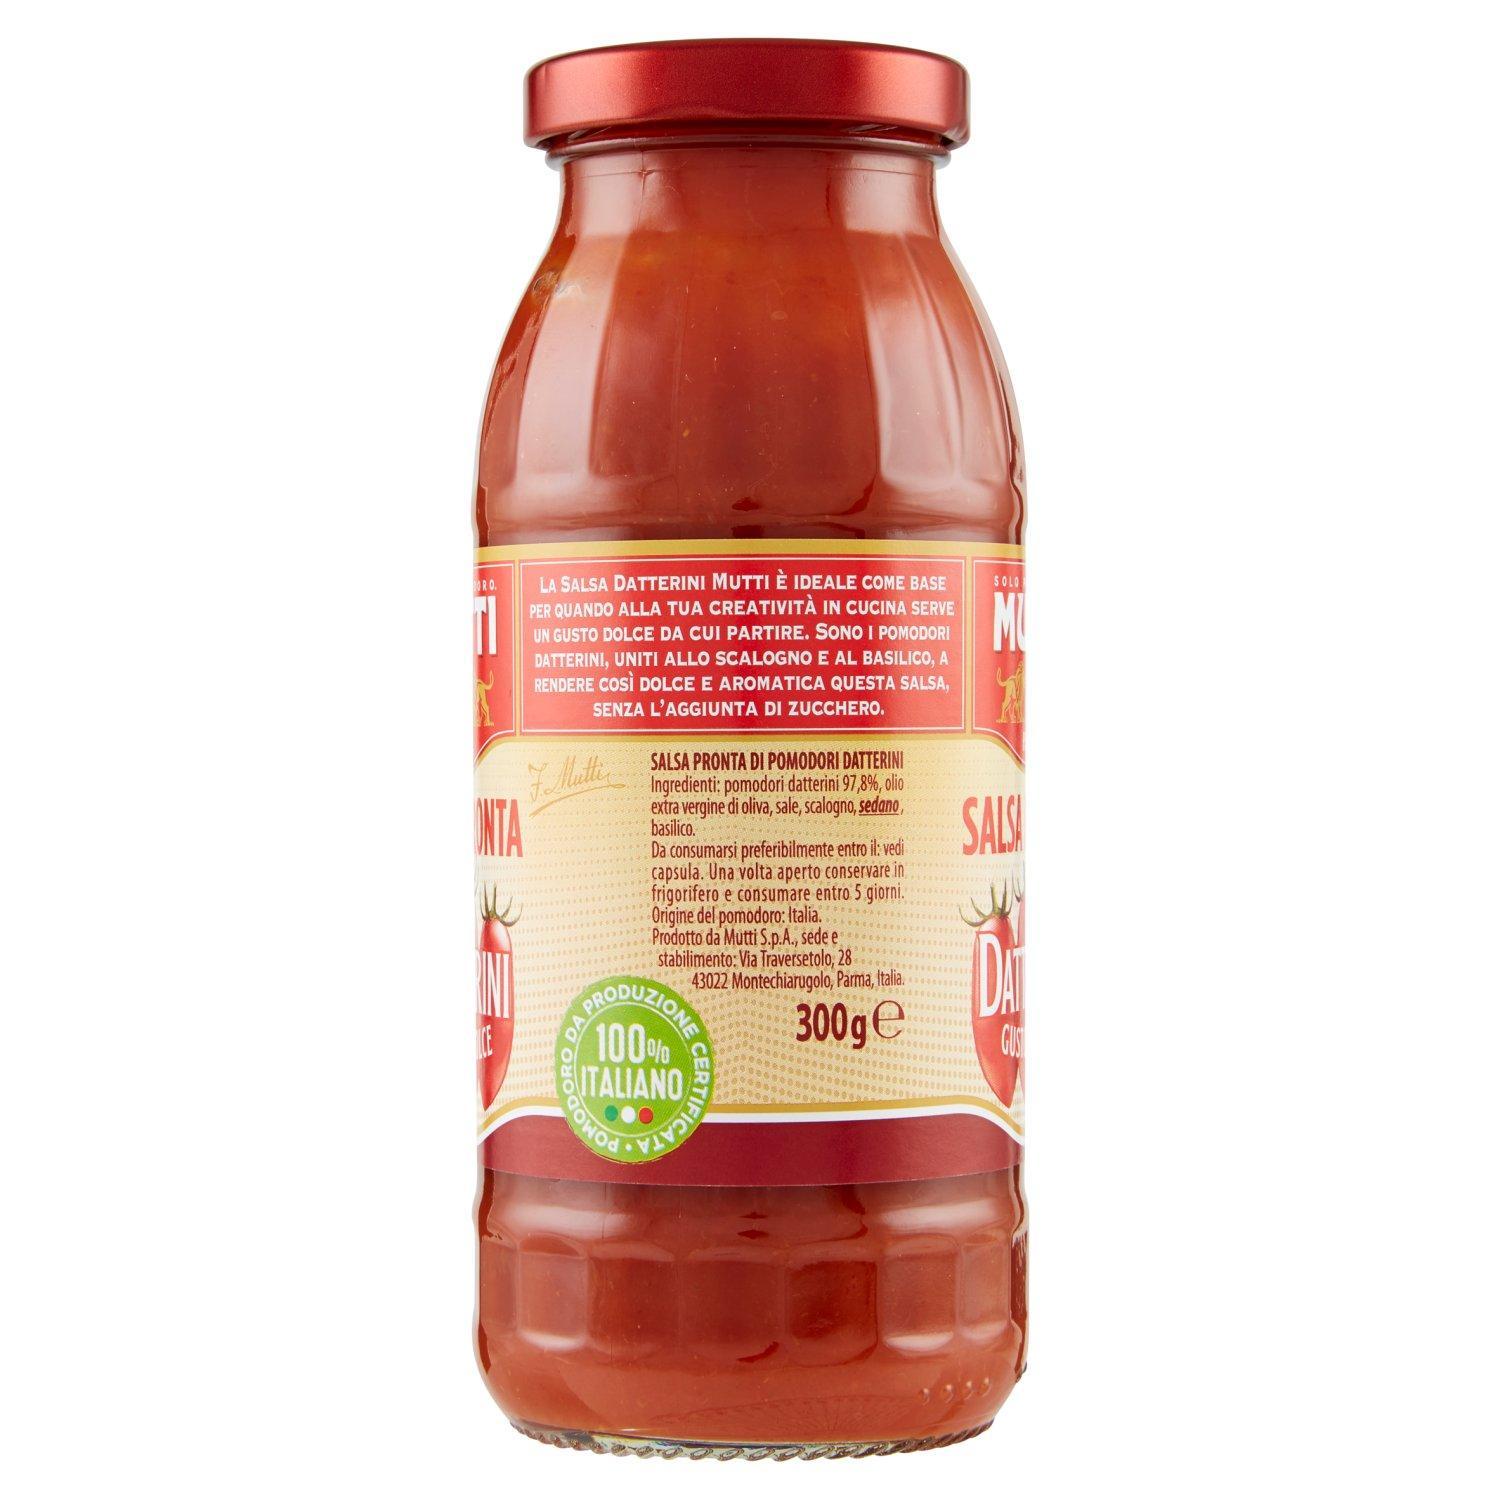 sugo-pronto-mutti-salsa-pomodori-datterini-300gr-2